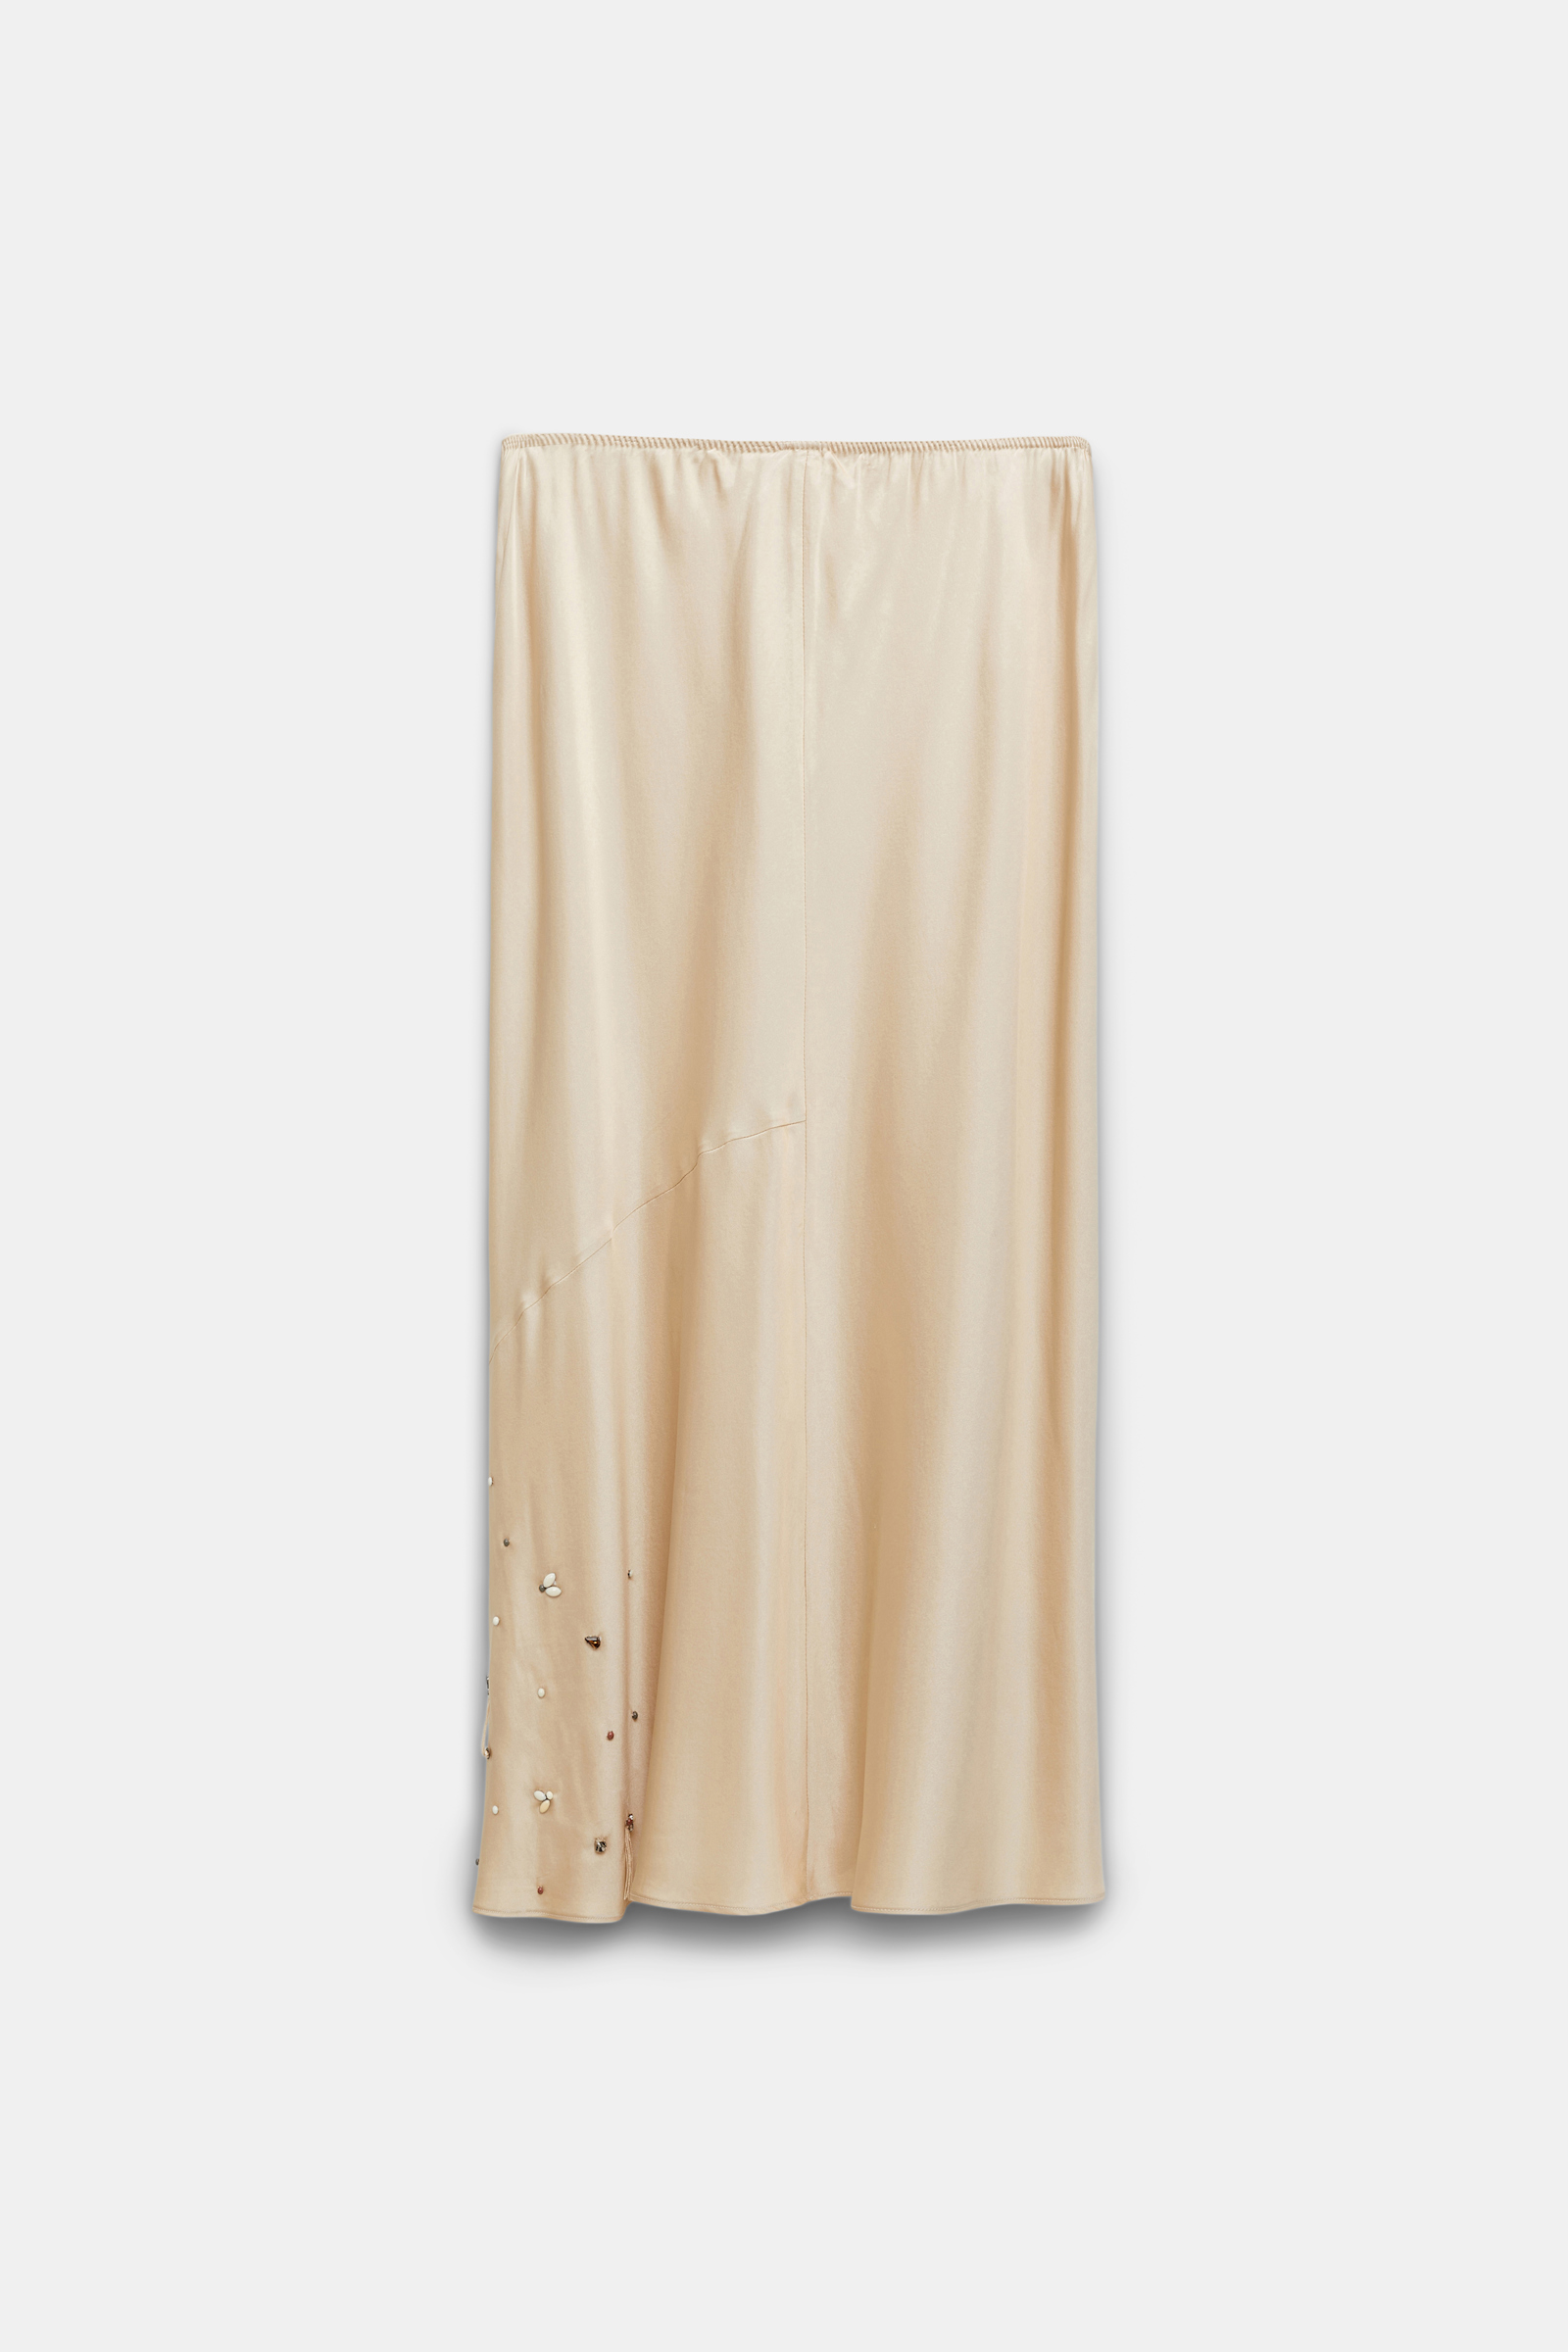 Dorothee Schumacher Hand-embellished satin-silk skirt powder beige